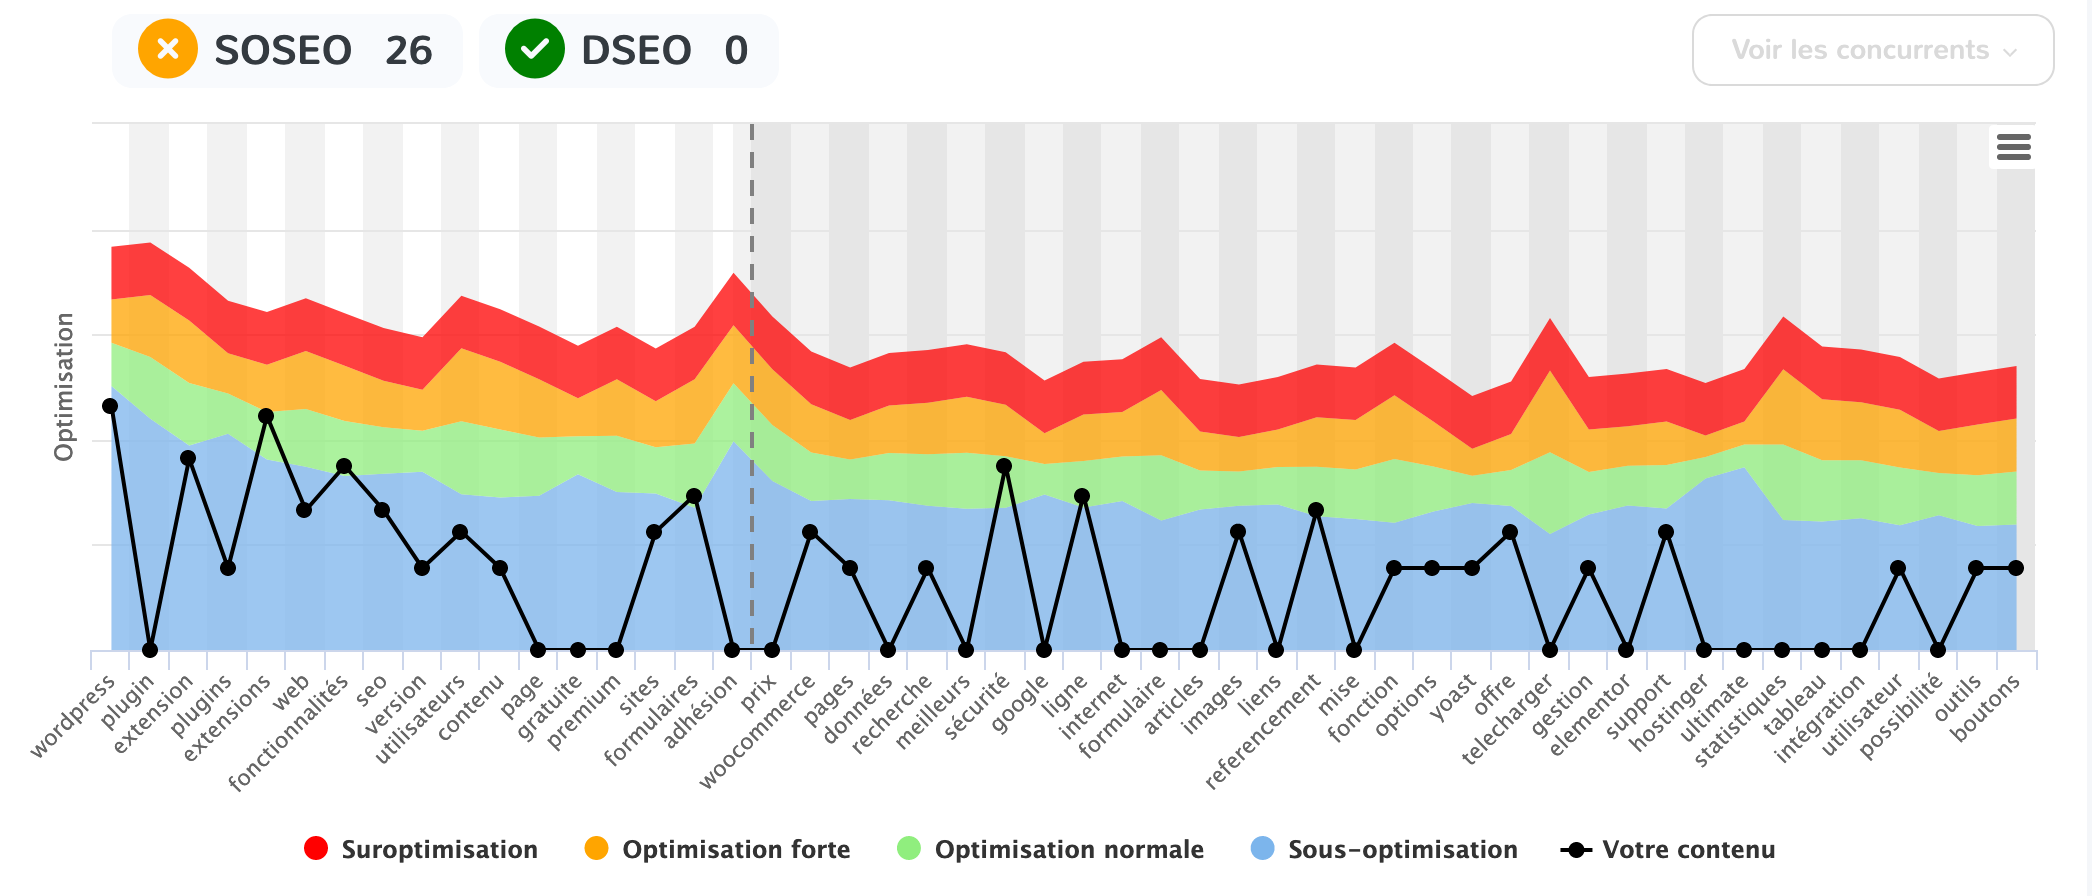 La courbe d'optimisation de YourTextGuru avec les scores SOSEO et DSEO.